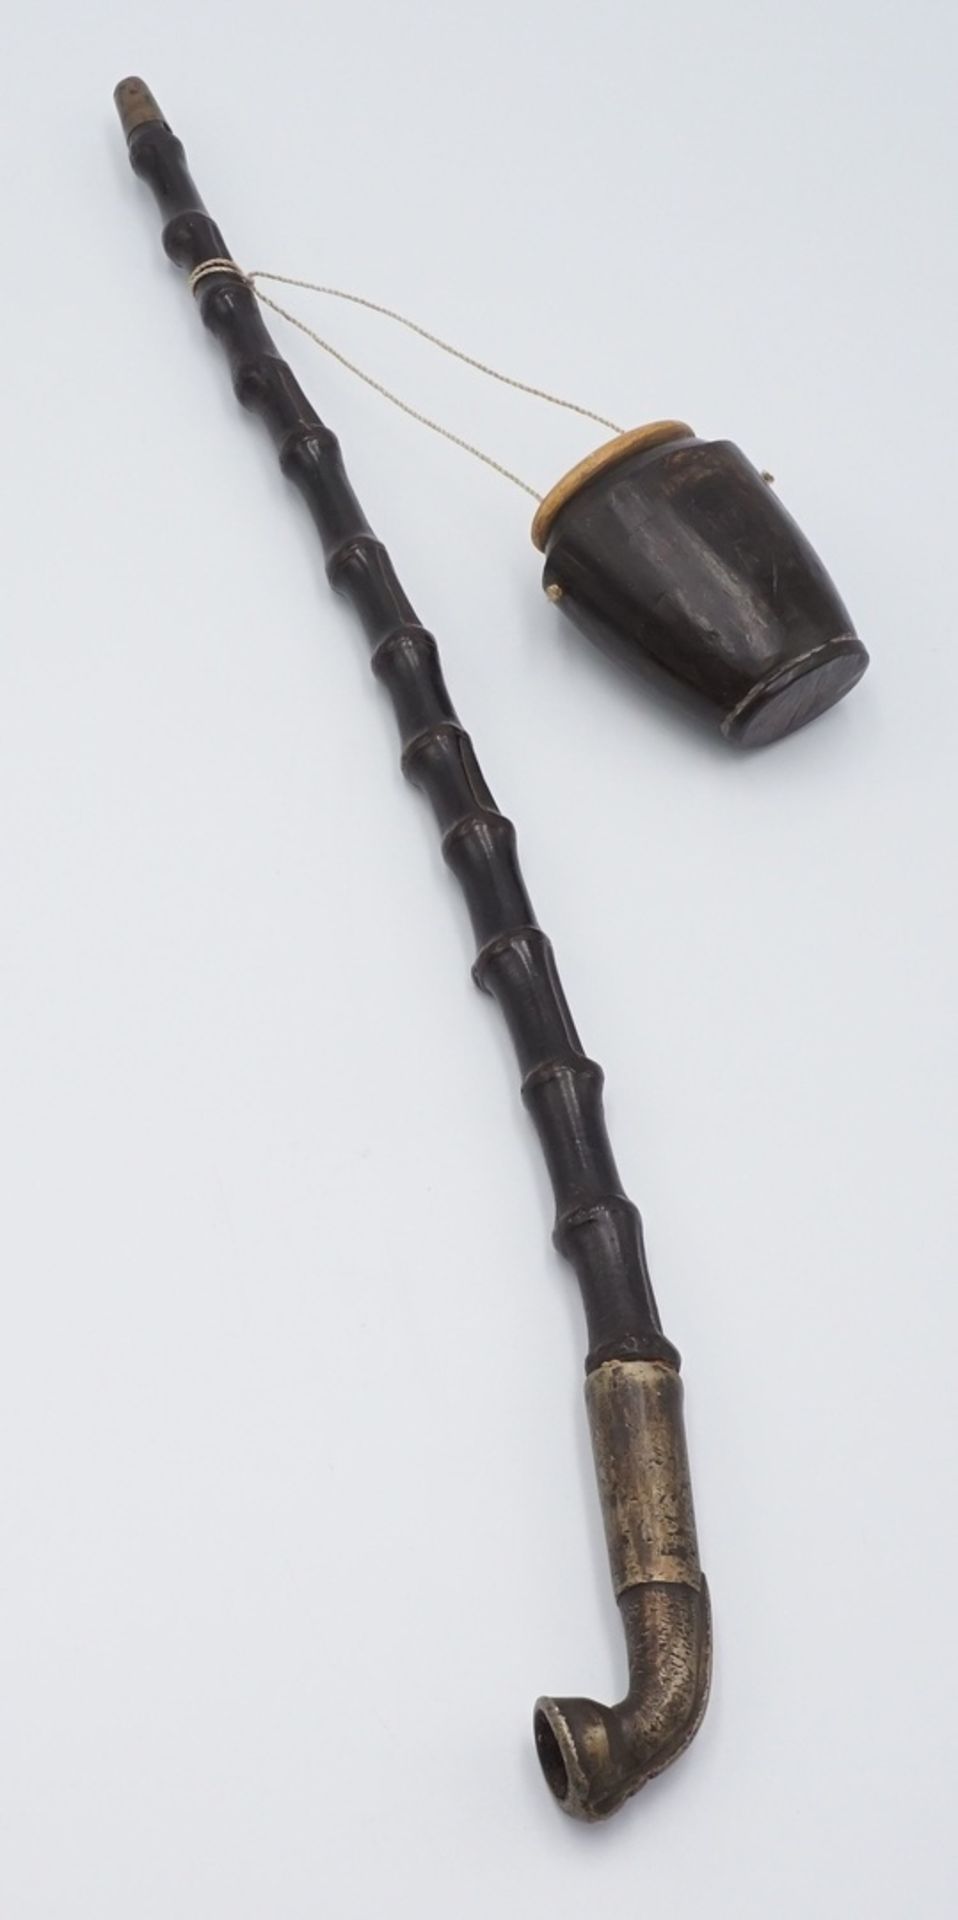 Opiumpfeife mit HornbehälterPfeife aus Bambus, Pfeifenkopf und Mundstück aus Messing, mit kleinem